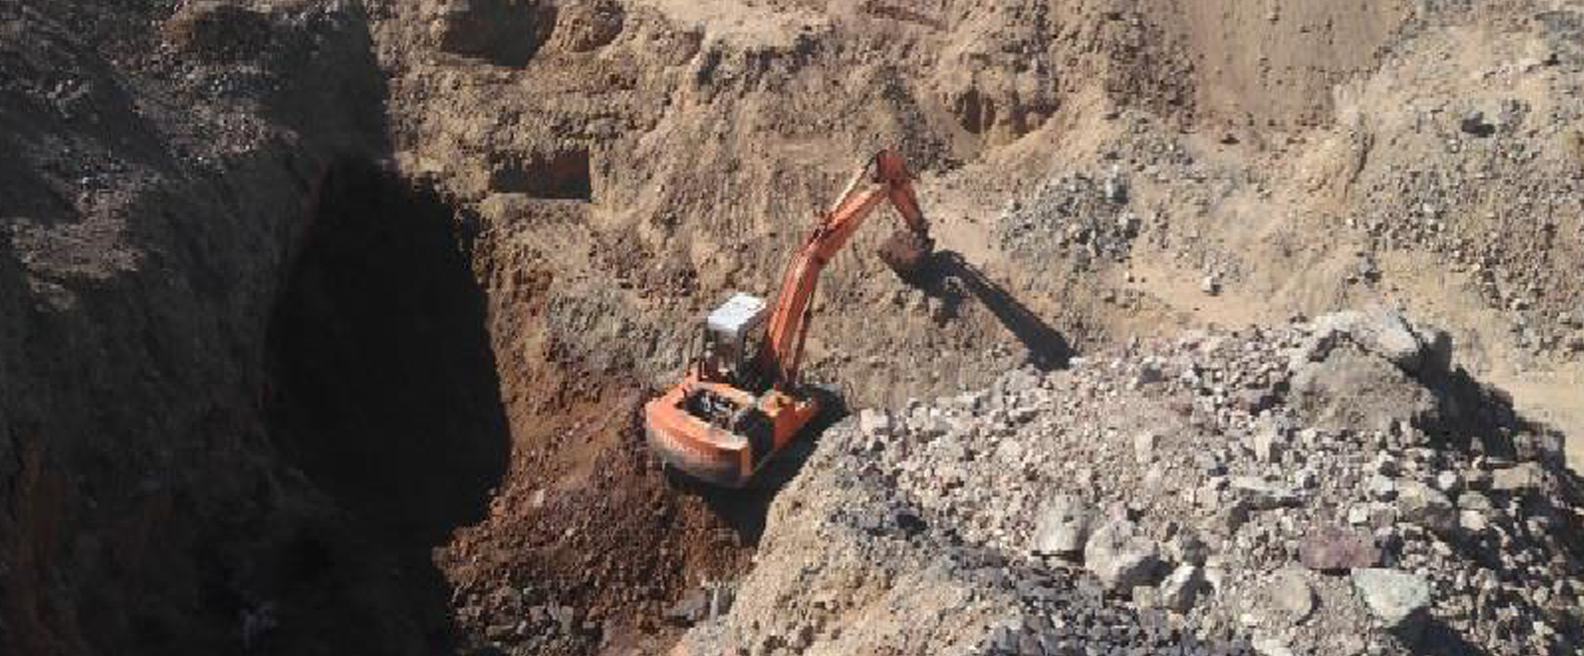 Iron ore mining at Pachinkoh Nokundi Balochistan